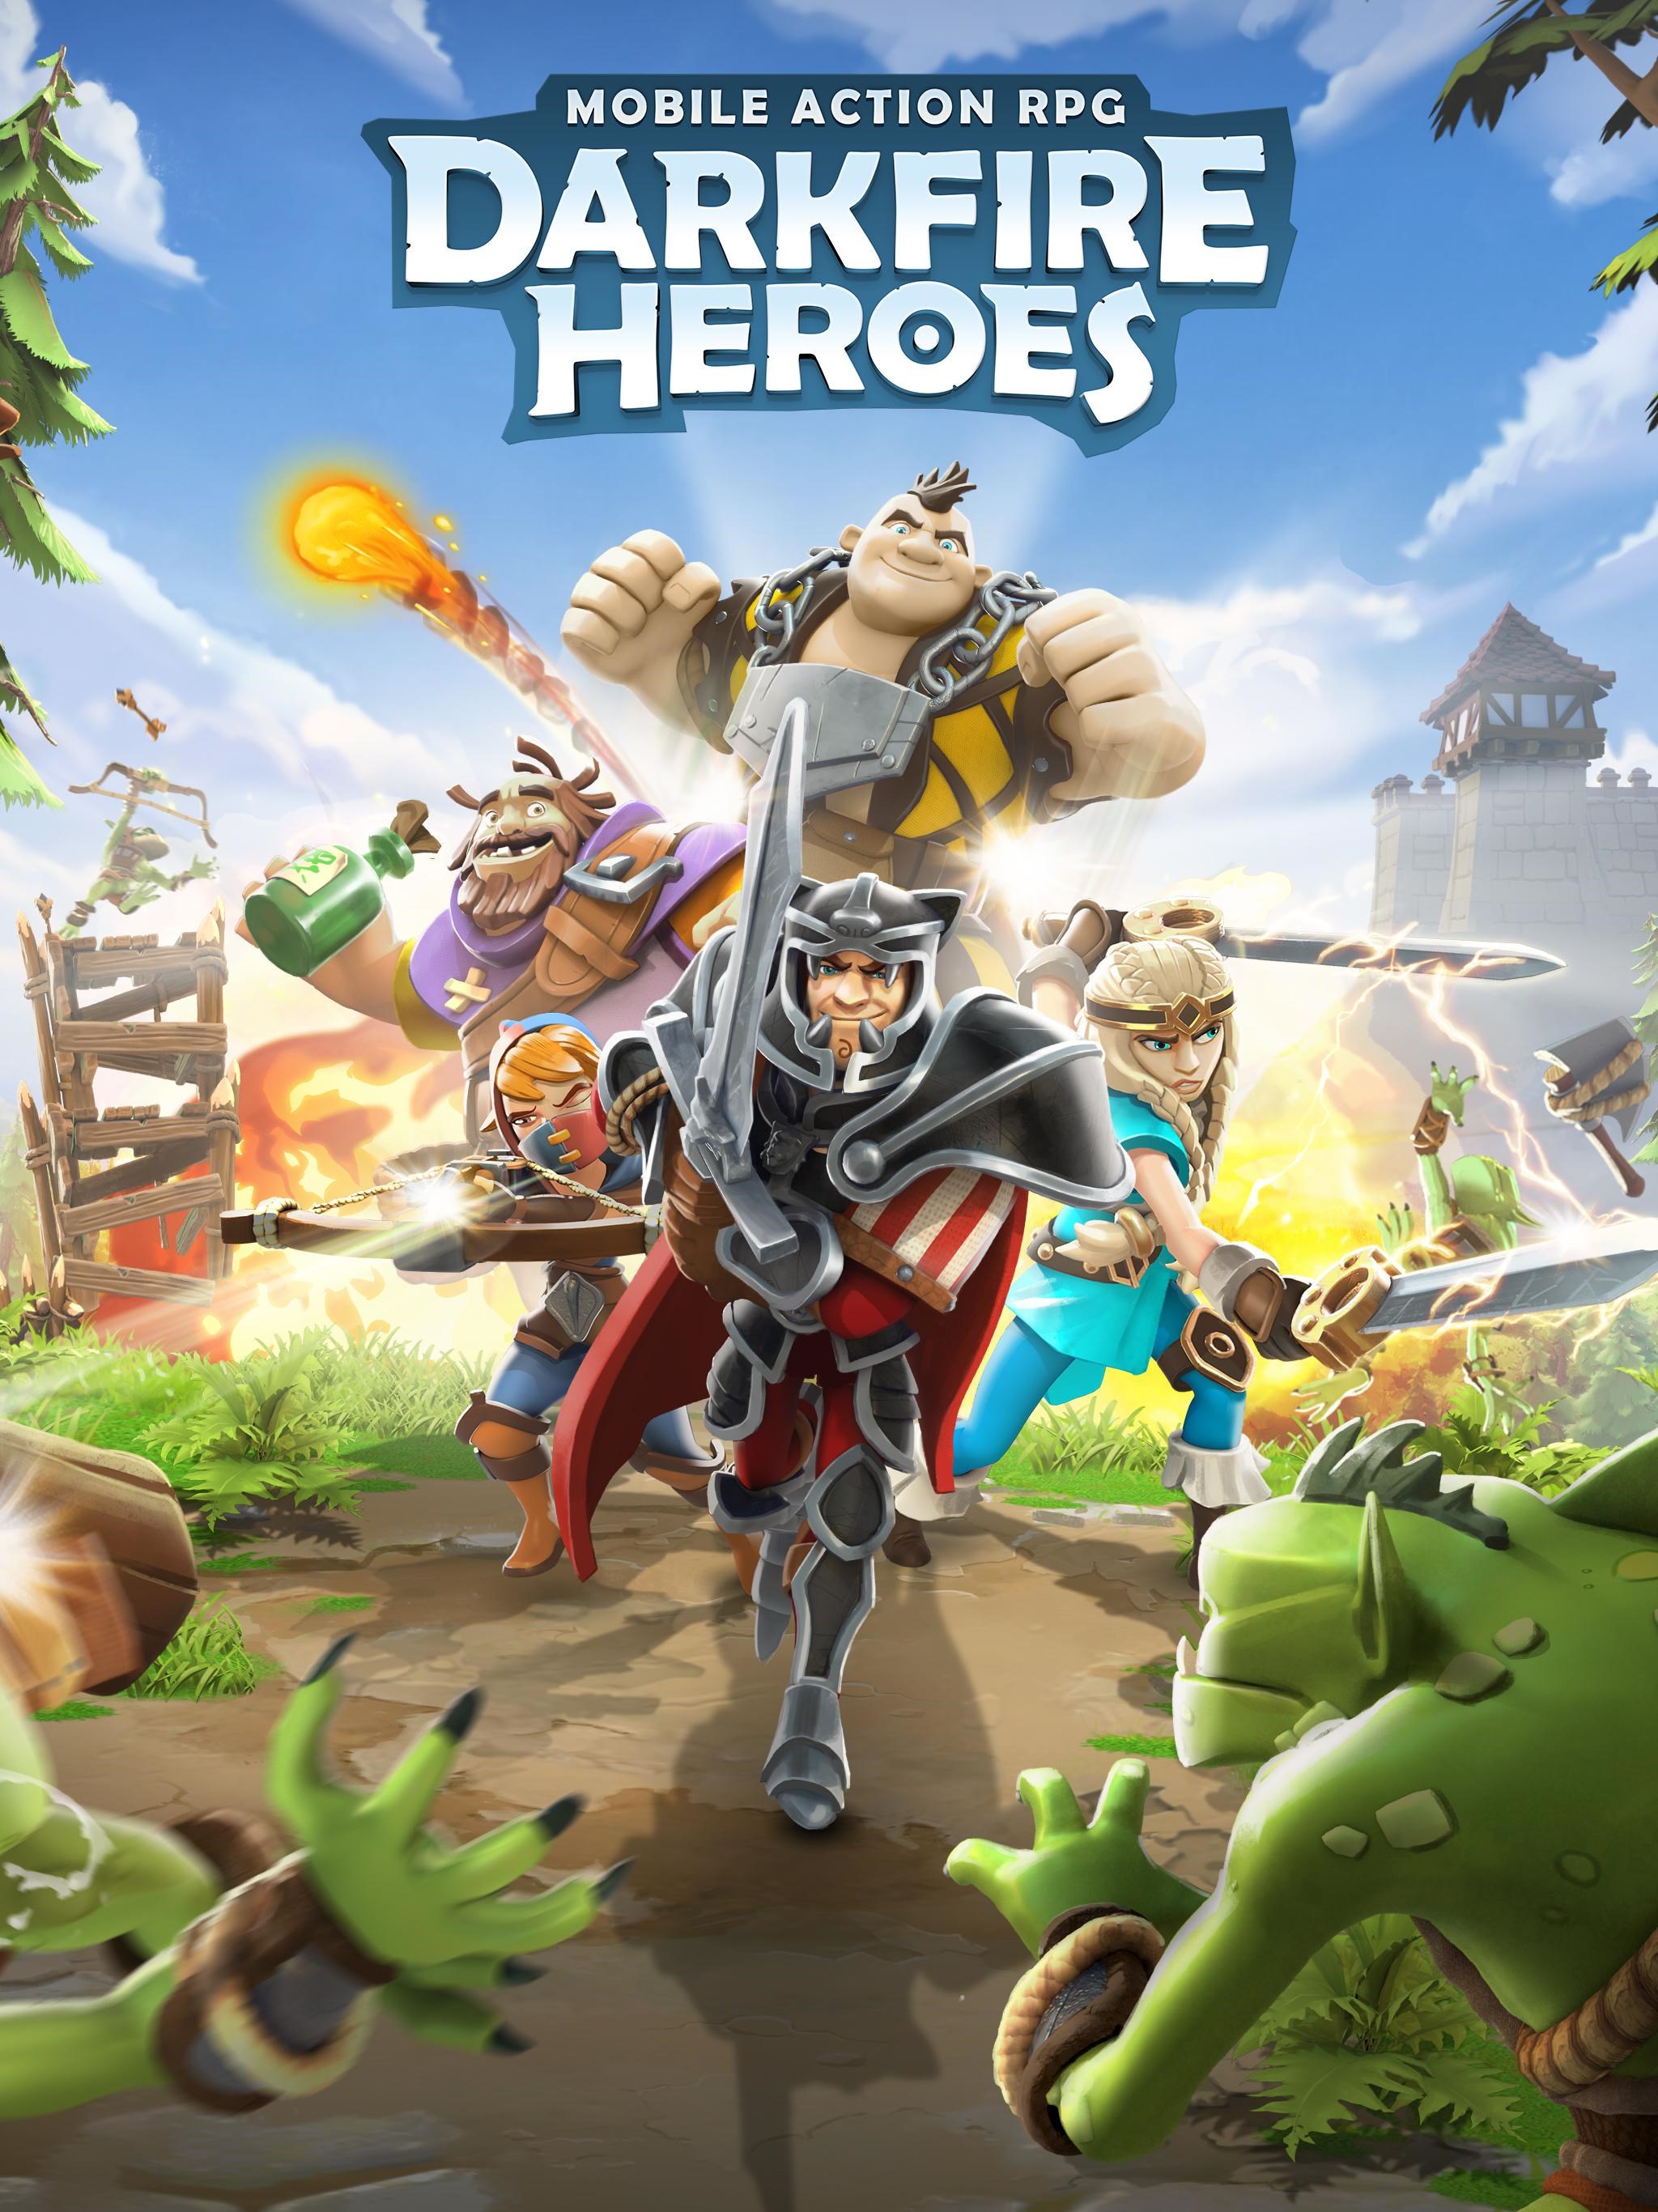 Aksiyon rol yapma oyunu Darkfire Heroes, ücretsiz olarak mobil cihazlar için yayınlandı